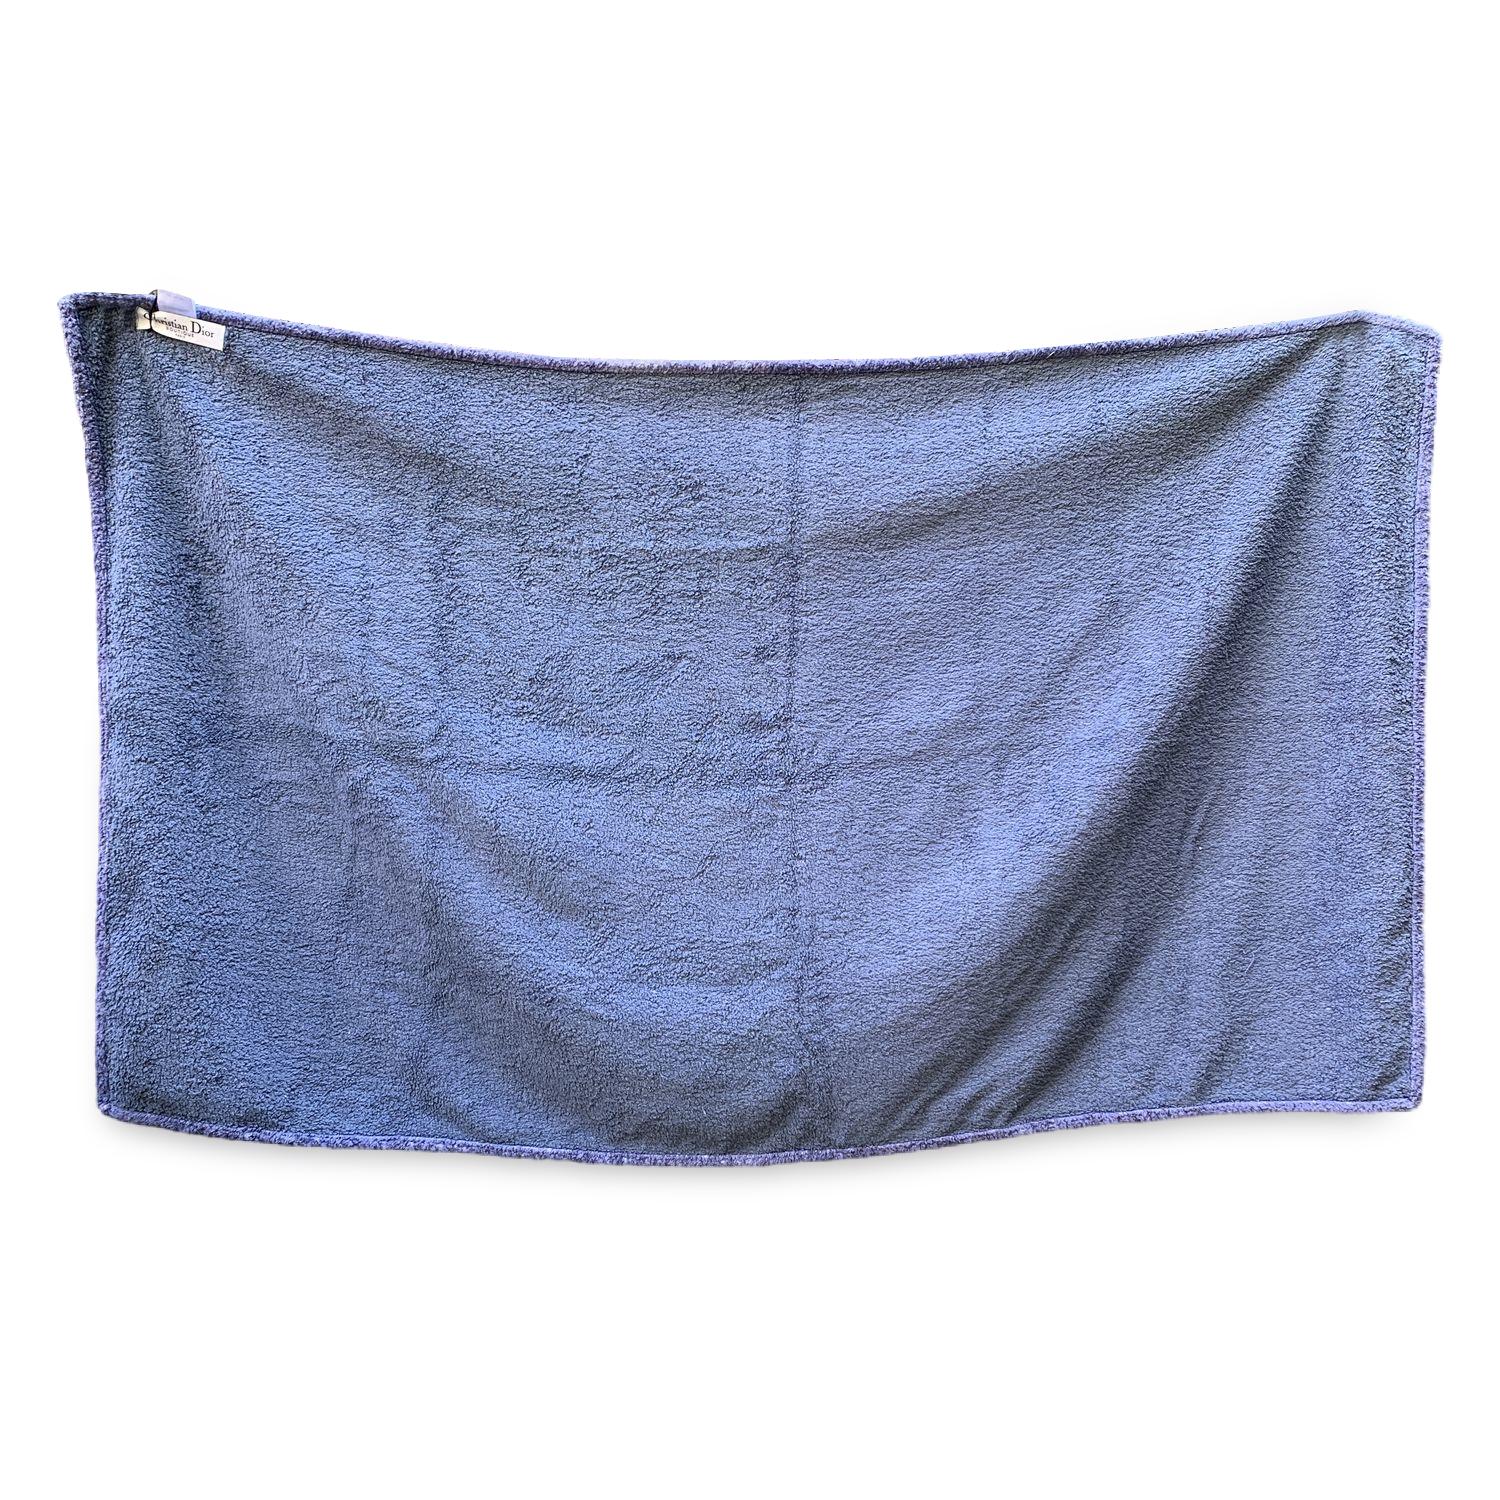 Vintage Christian Dior Terrycloth Cotton Large Beach Towel with Monogram oblique pattern. Couleur bleue. 100% coton. Dimensions : 35 x 60 pouces - 88.8 x 152.4cm.

Détails

MATERIAL : Coton

COULEUR : Bleu

MODÈLE : -

GENDER : Adultes